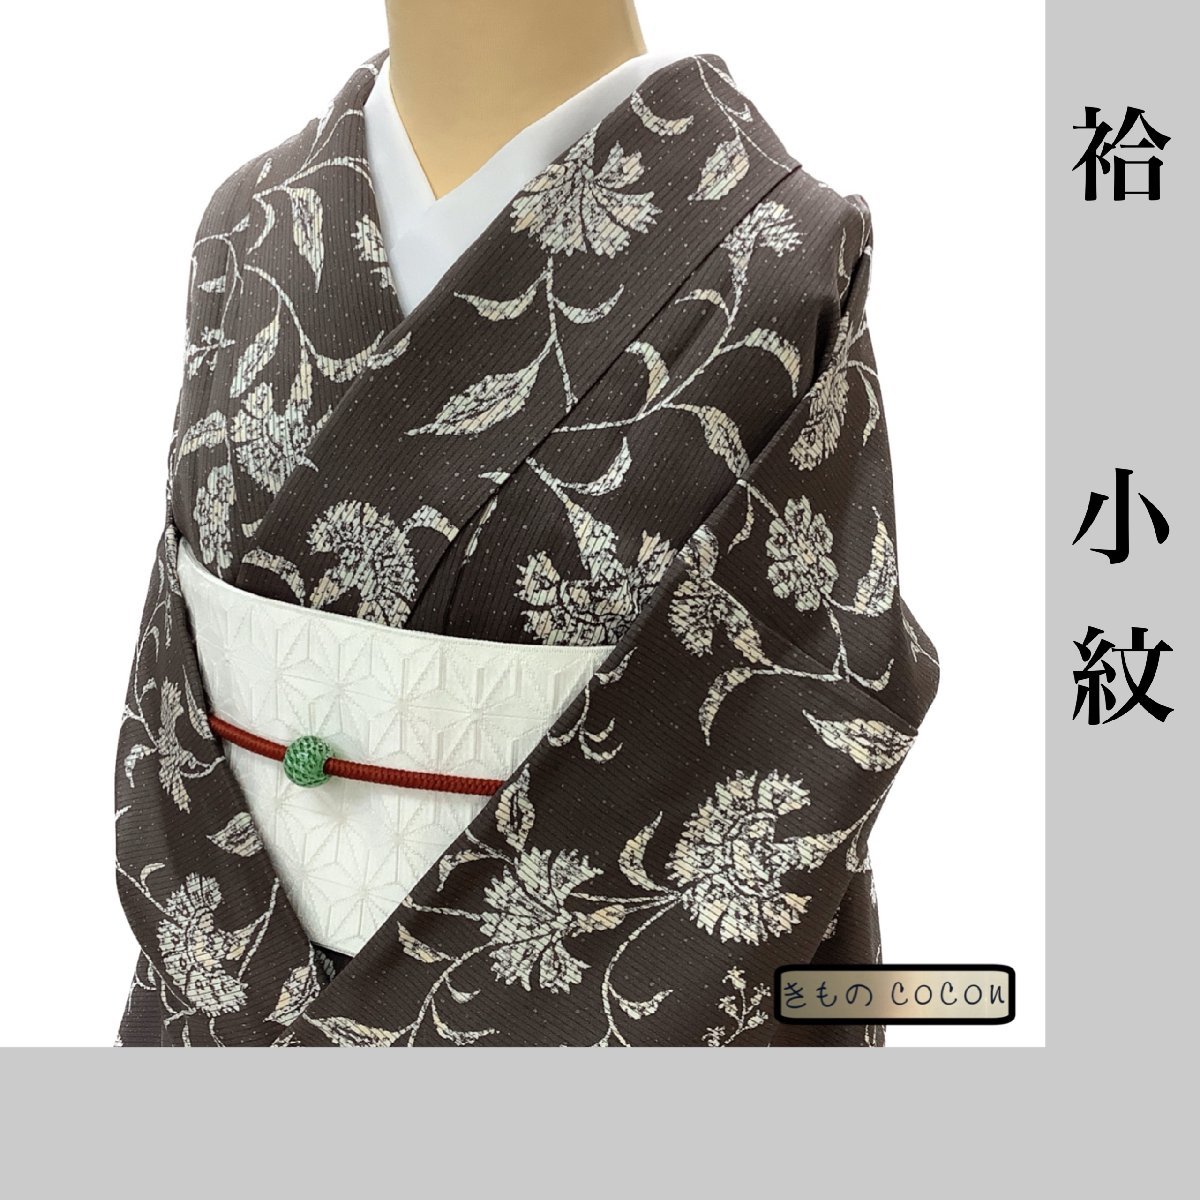 売れ筋アイテムラン 小紋 単衣 正絹 送料無料 在庫限り 6月9月10月